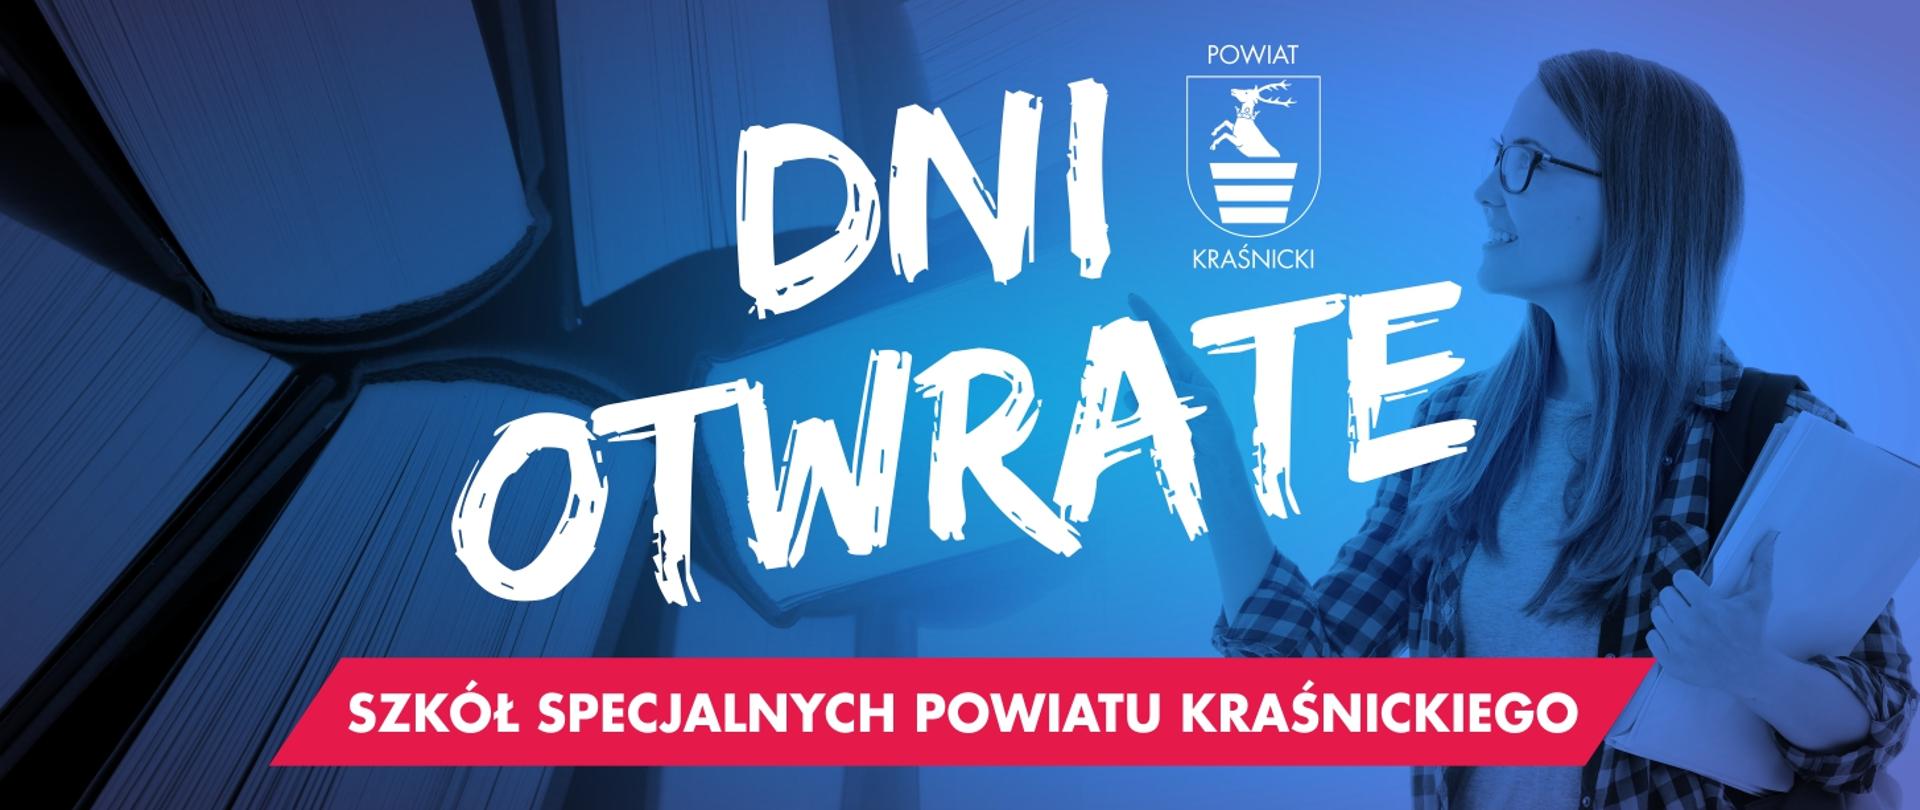 Baner promujący dni otwarte szkół specjalnych Powiatu Kraśnickiego. Na niebieskim tle znajduje się logo Powiatu Kraśnickiego, wizerunek uczennicy oraz napis dni otwarte szkół specjalnych Powiatu Kraśnickiego.